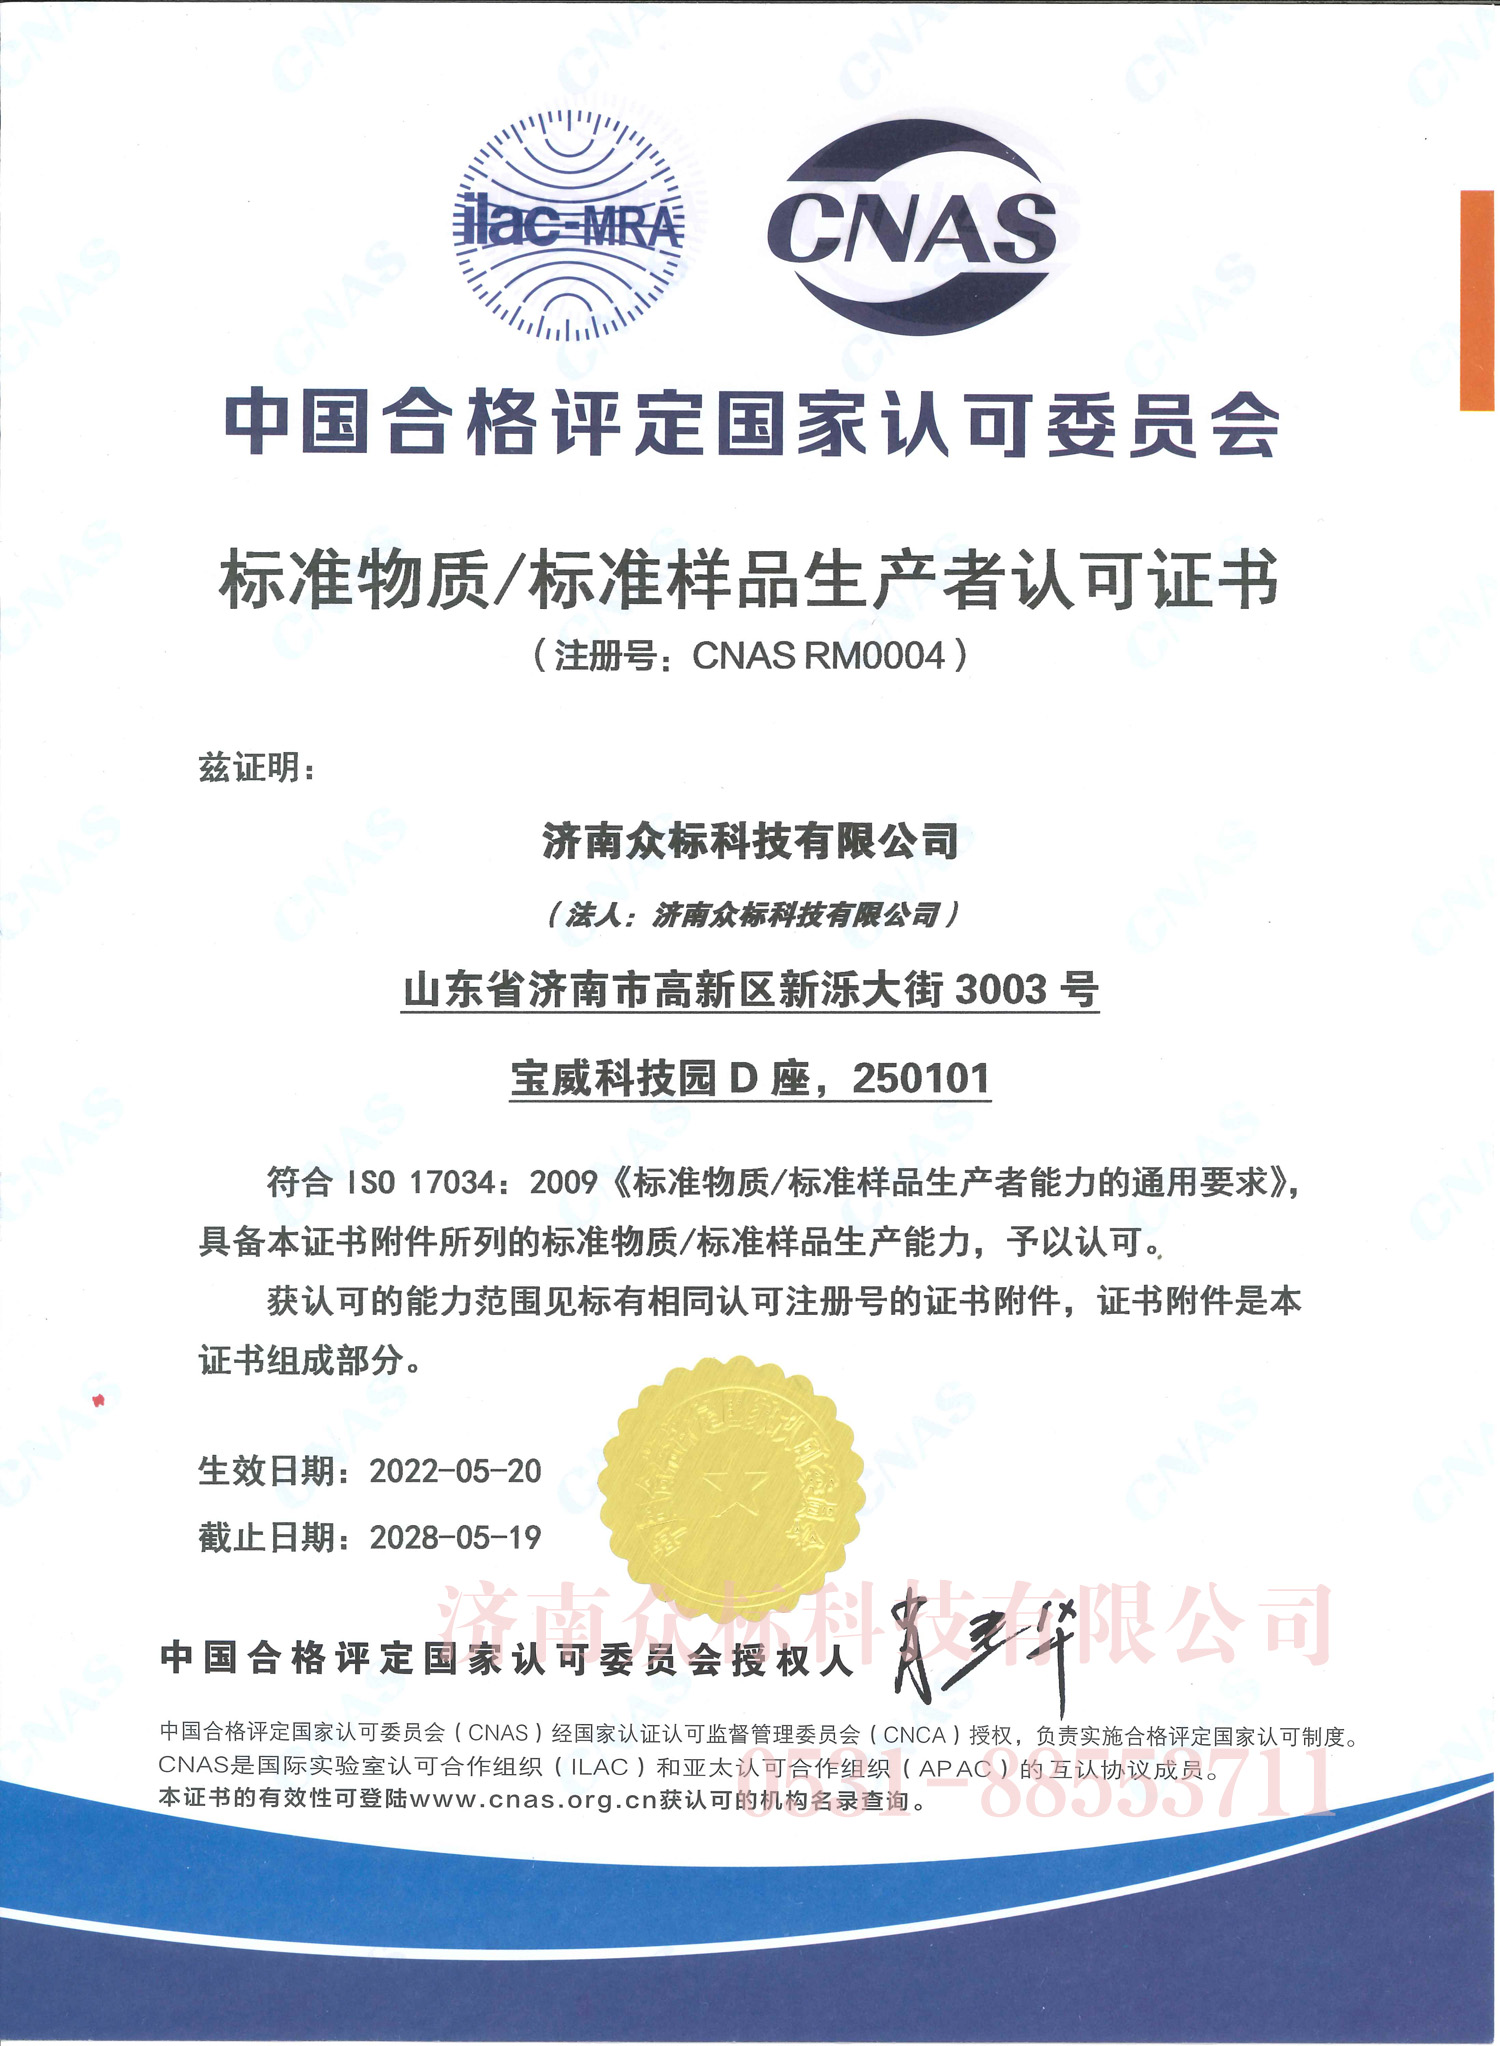 标准物质/标准样品生产者认可证书CNAS RM0004